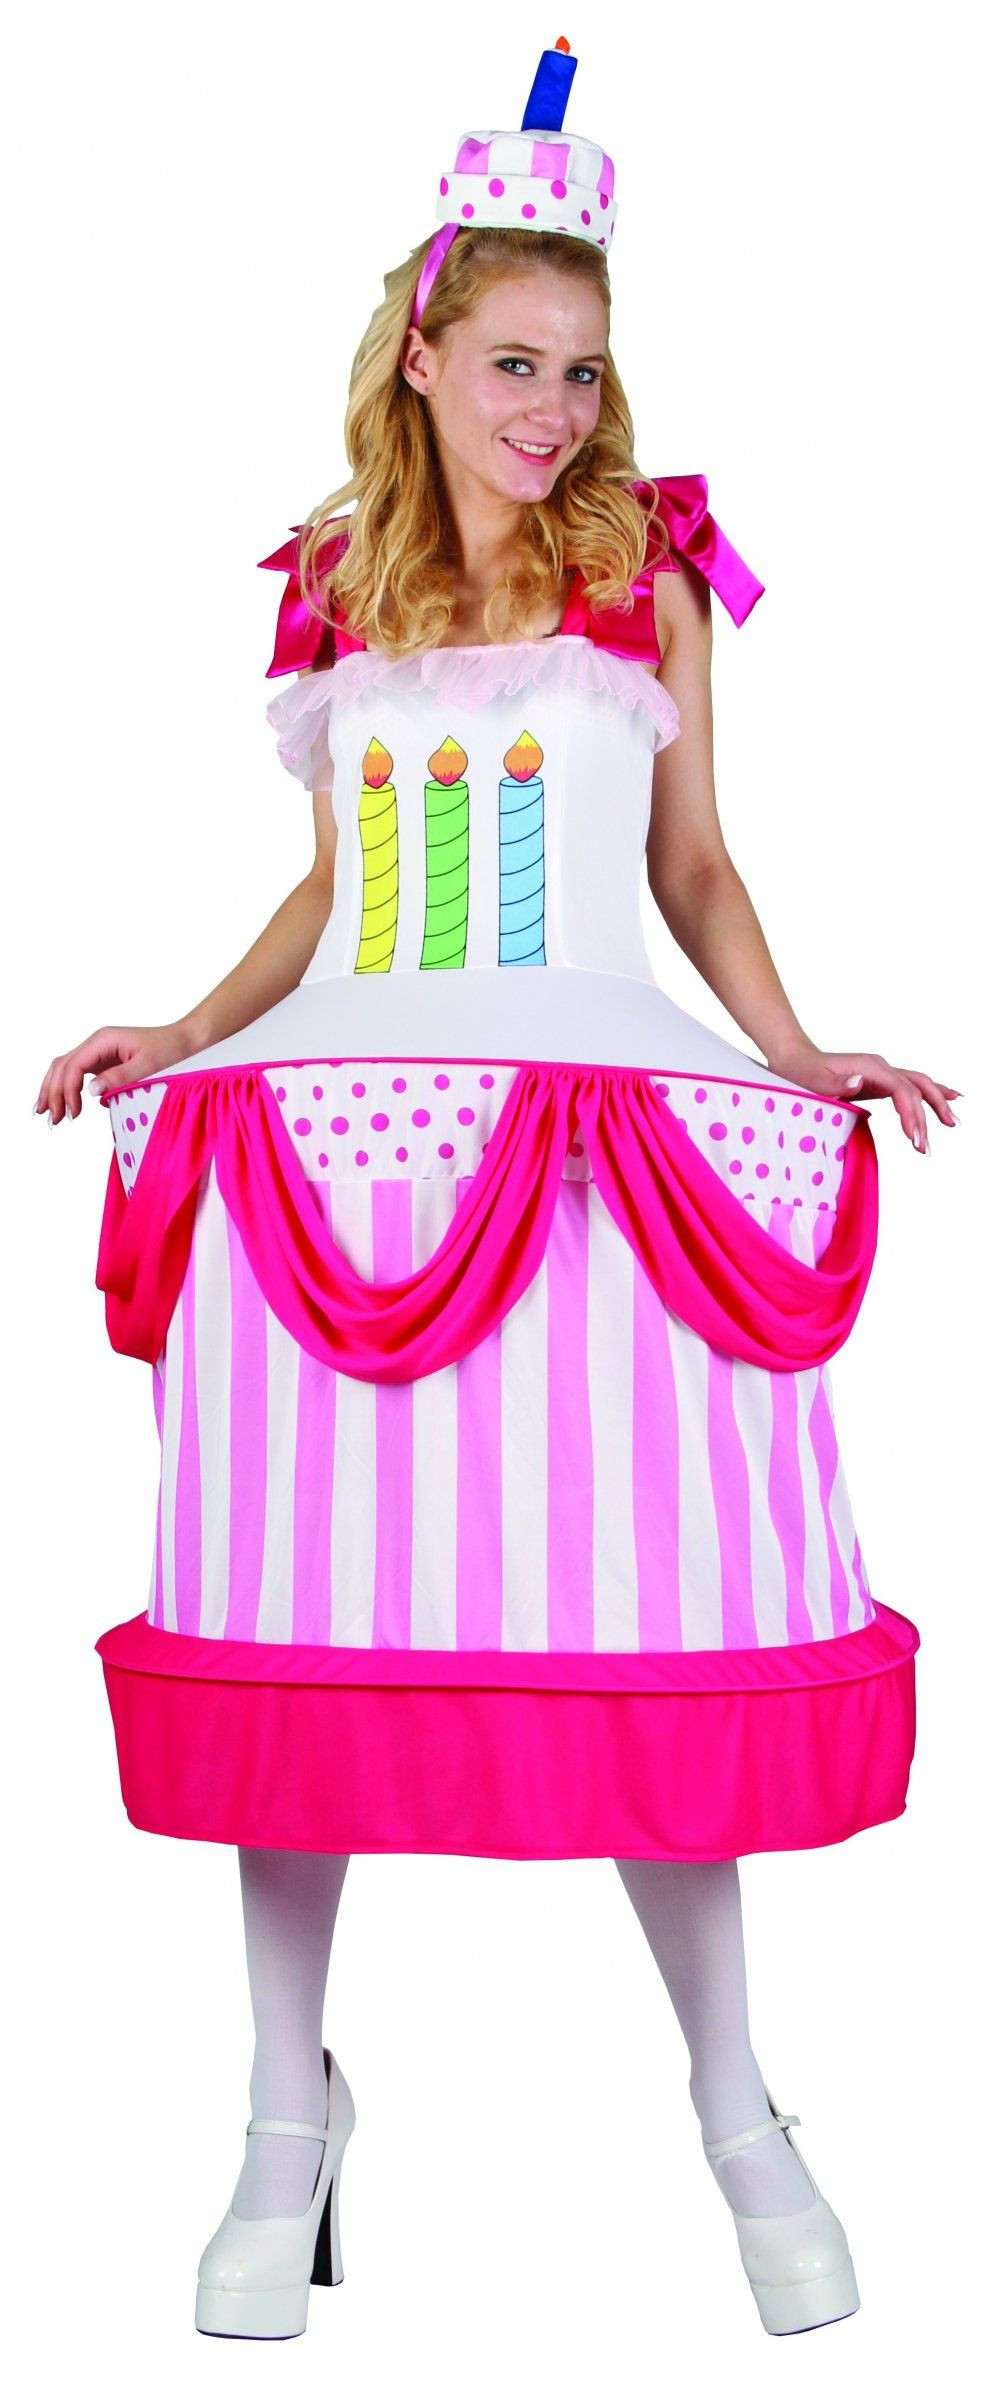 Birthday Cake Halloween Costume
 Birthday cake costume for women